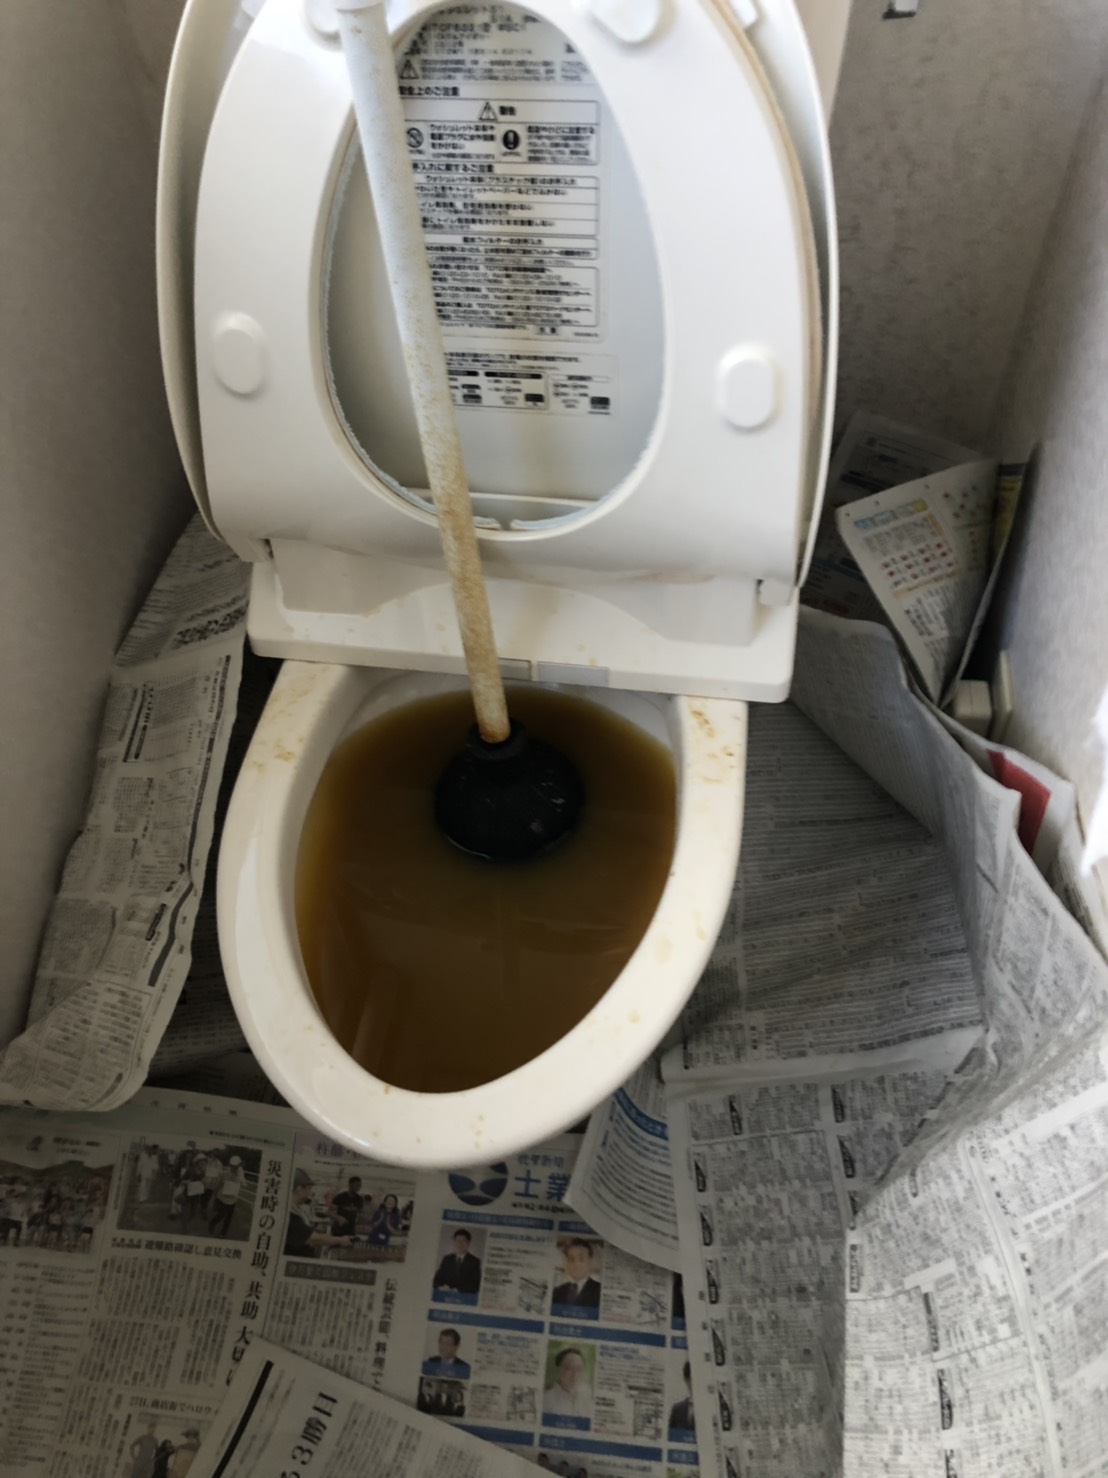 トイレのつまりを”すっぽん”で取ろうとしたけど取れなかった時の原因はコレだった。【東区舞松原での事例】 福岡水道